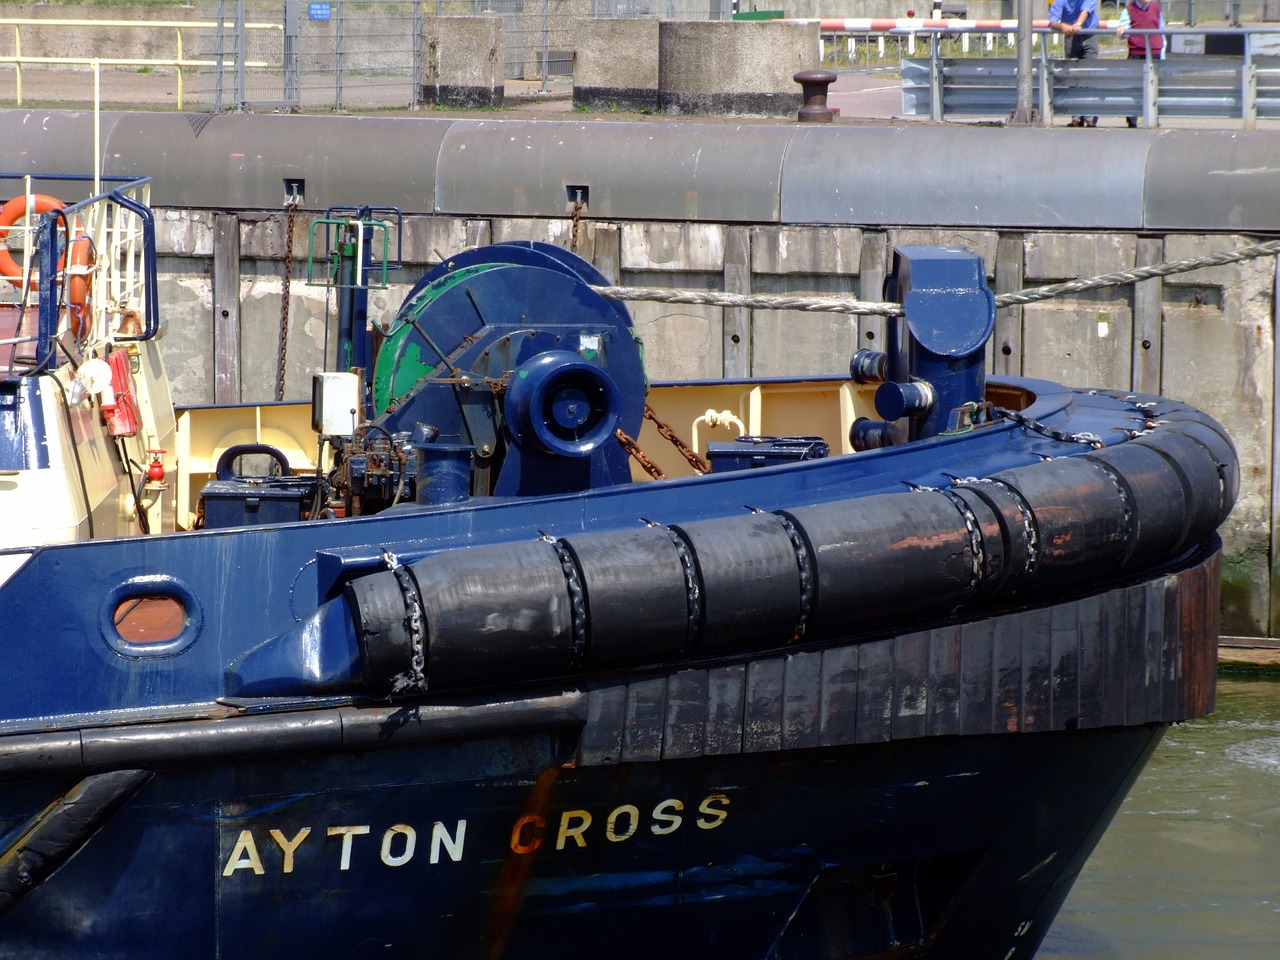 ayton cross bow tugboat free photo